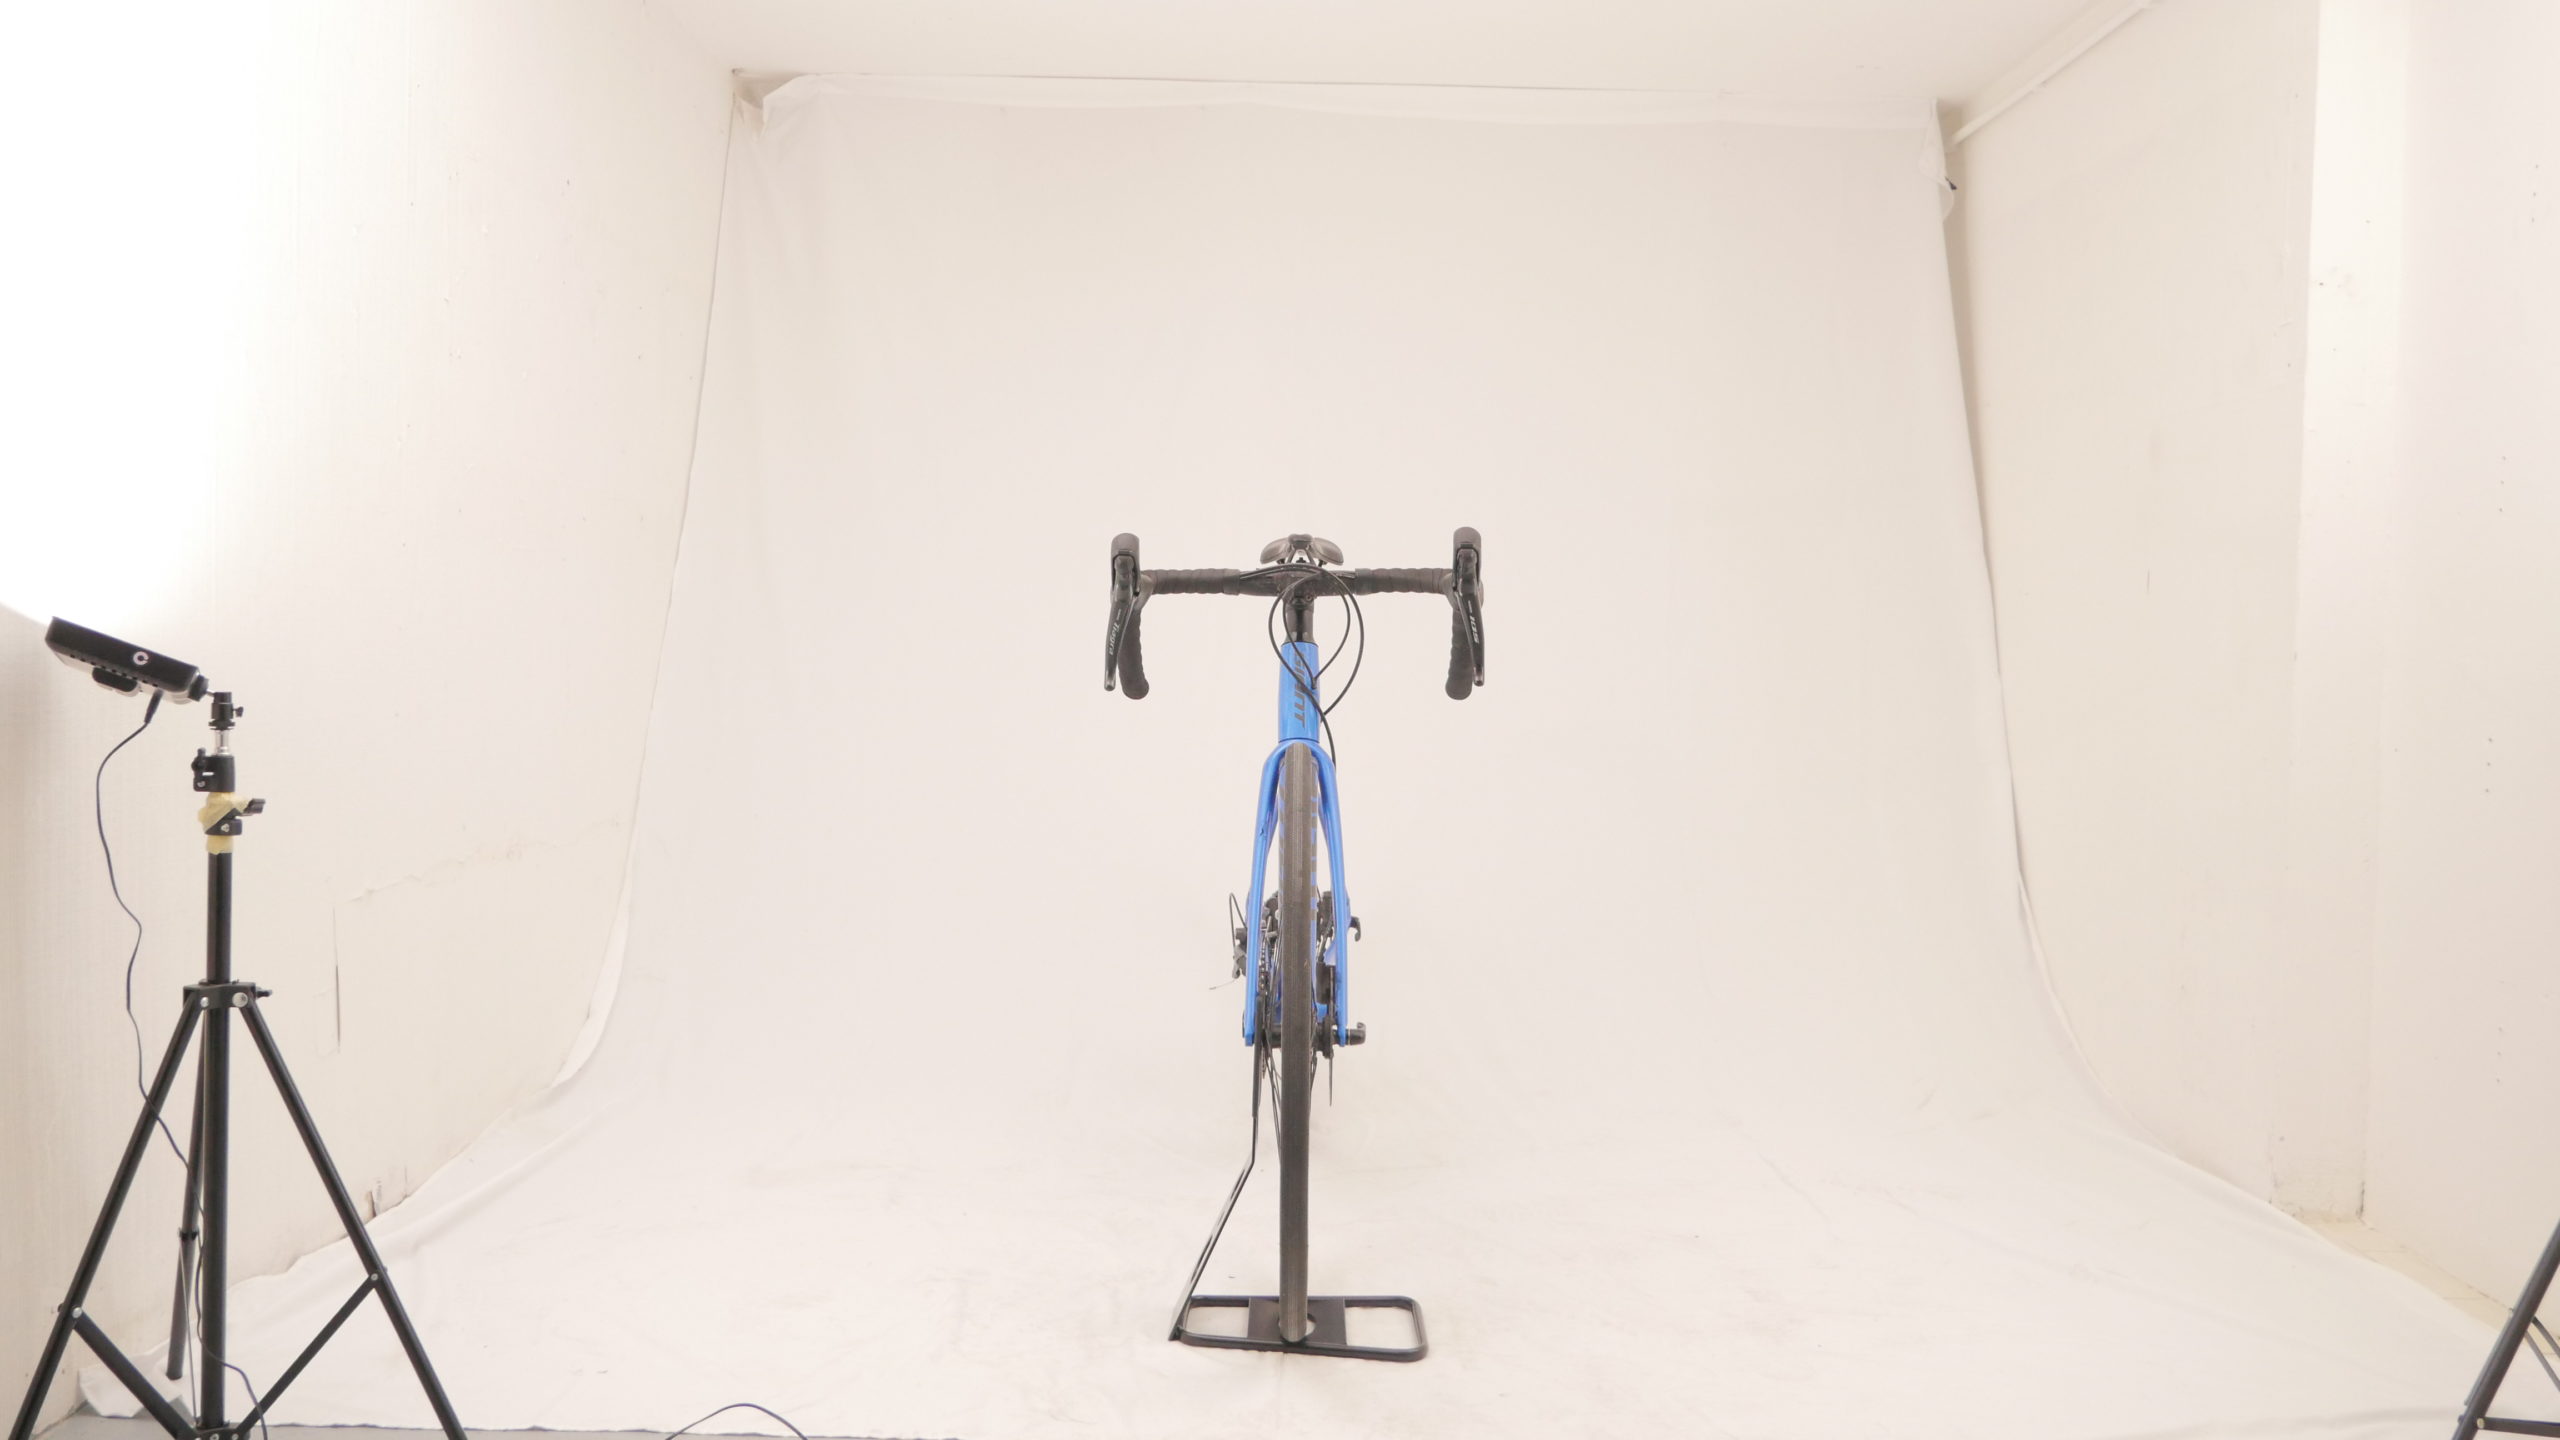 Road Bike Giant Contend SL Disc Shimano Tiagra/105 Bleu